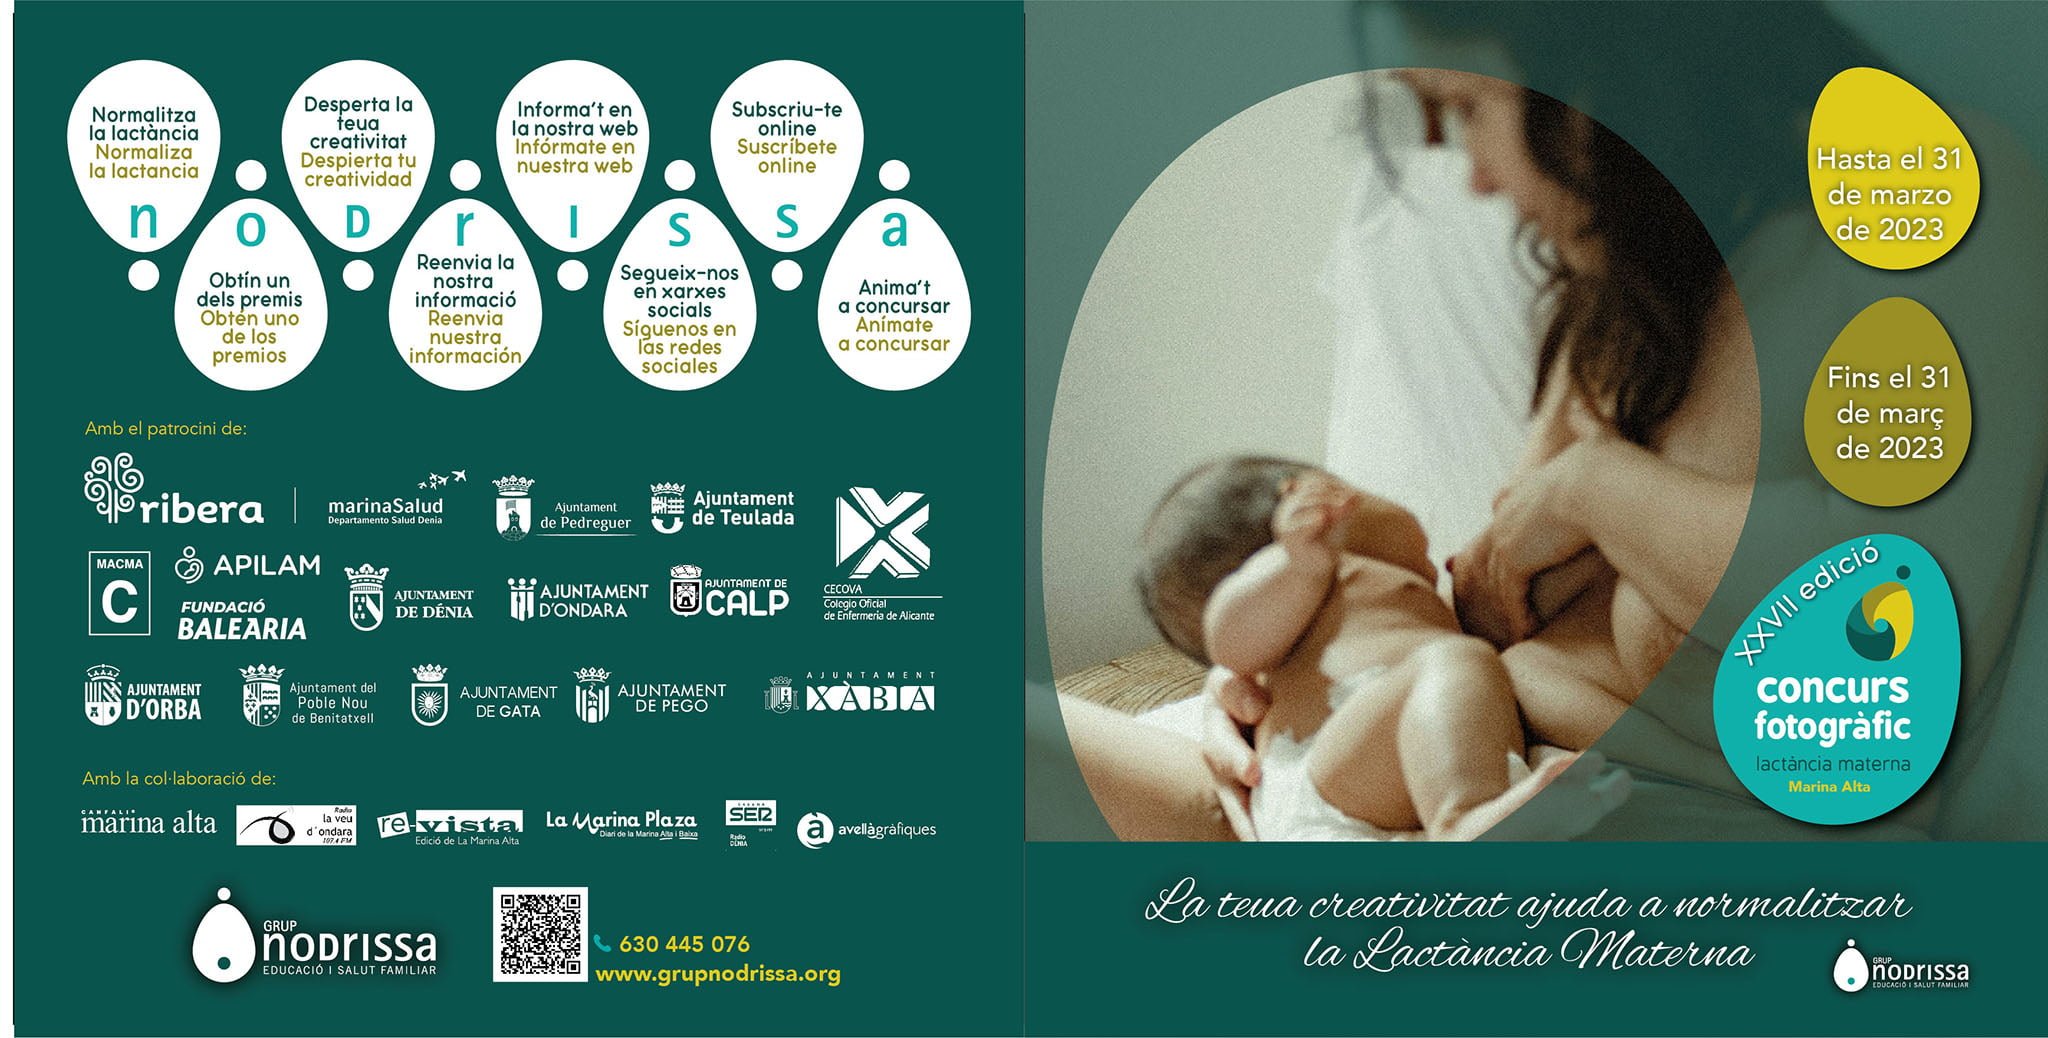 XVII Concurso fotográfico de lactancia materna Marina Alta de Grup Nodrissa